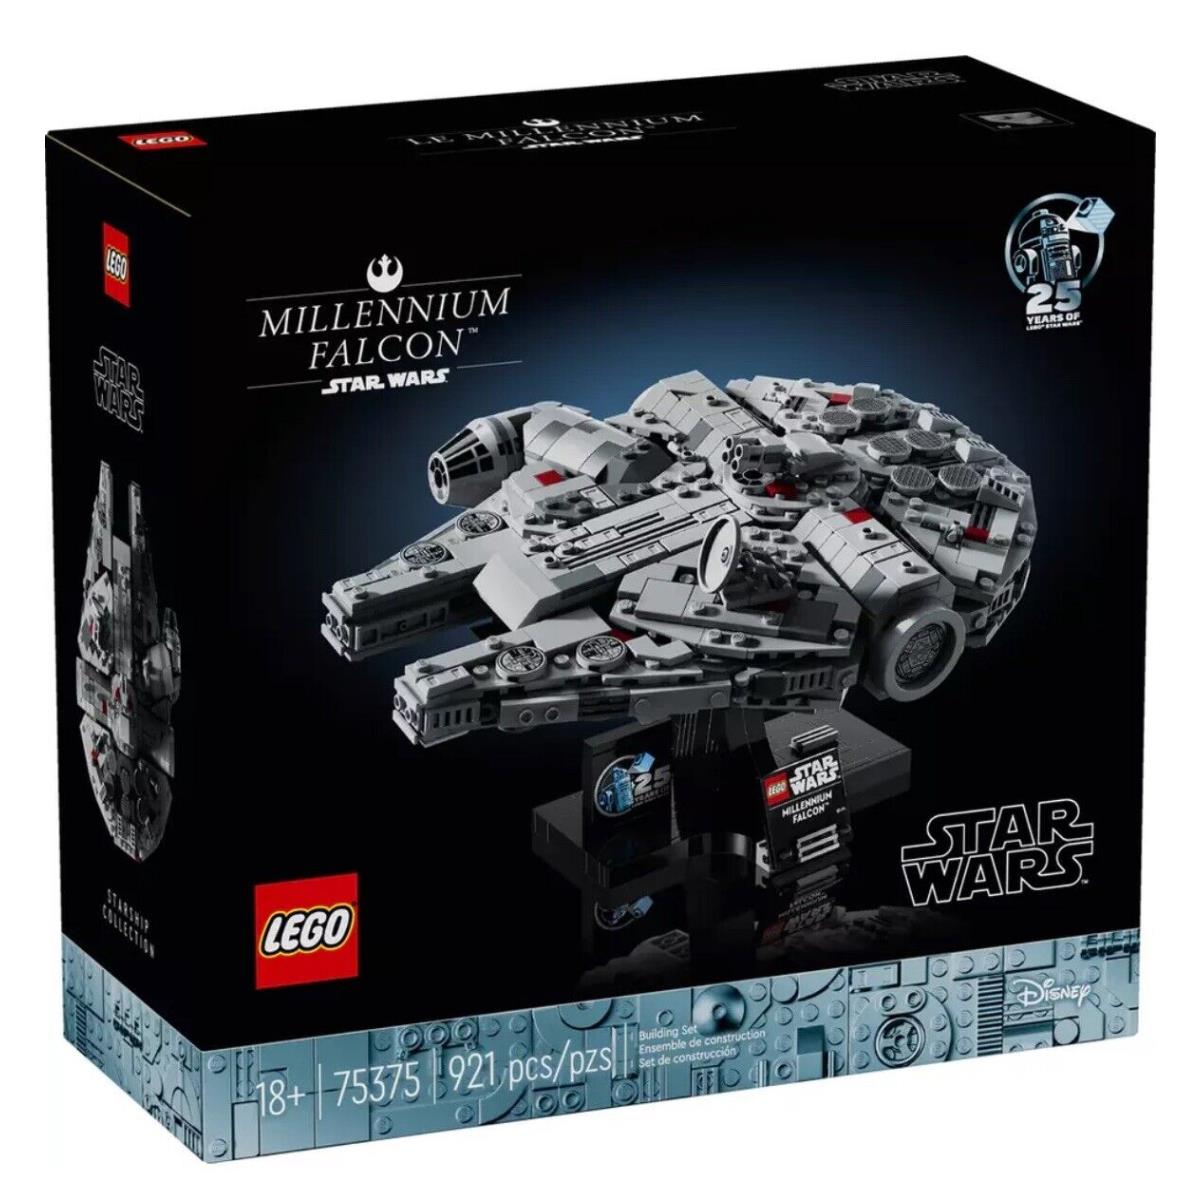 Lego 75375 Star Wars Millennium Falcon Building Set 921 Pieces Age 18+